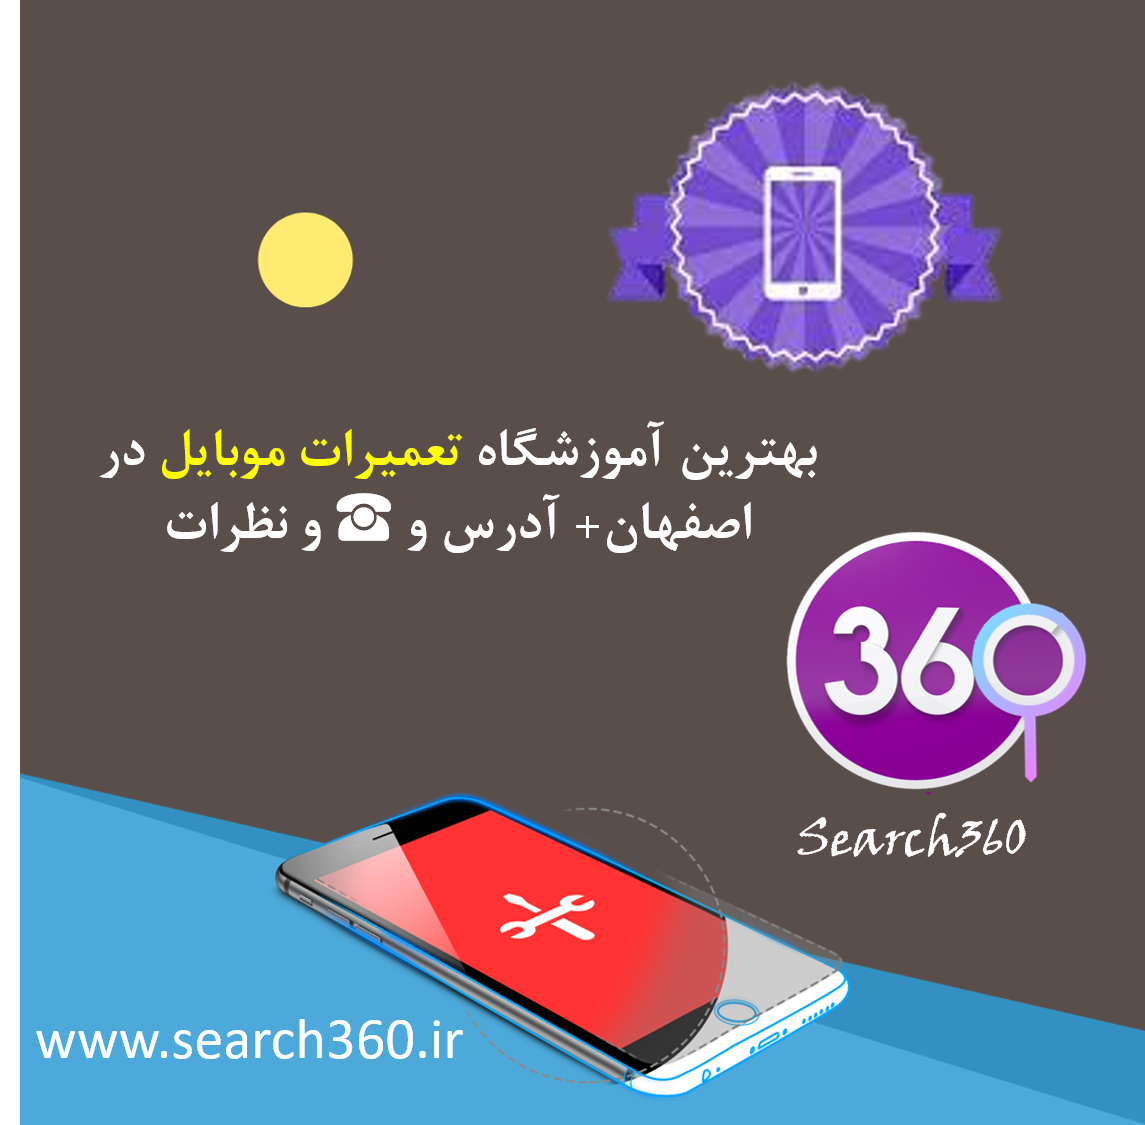 بهترین آموزشگاه تعمیر موبایل در اصفهان با آدرس، نظرات و تلفن ☎️